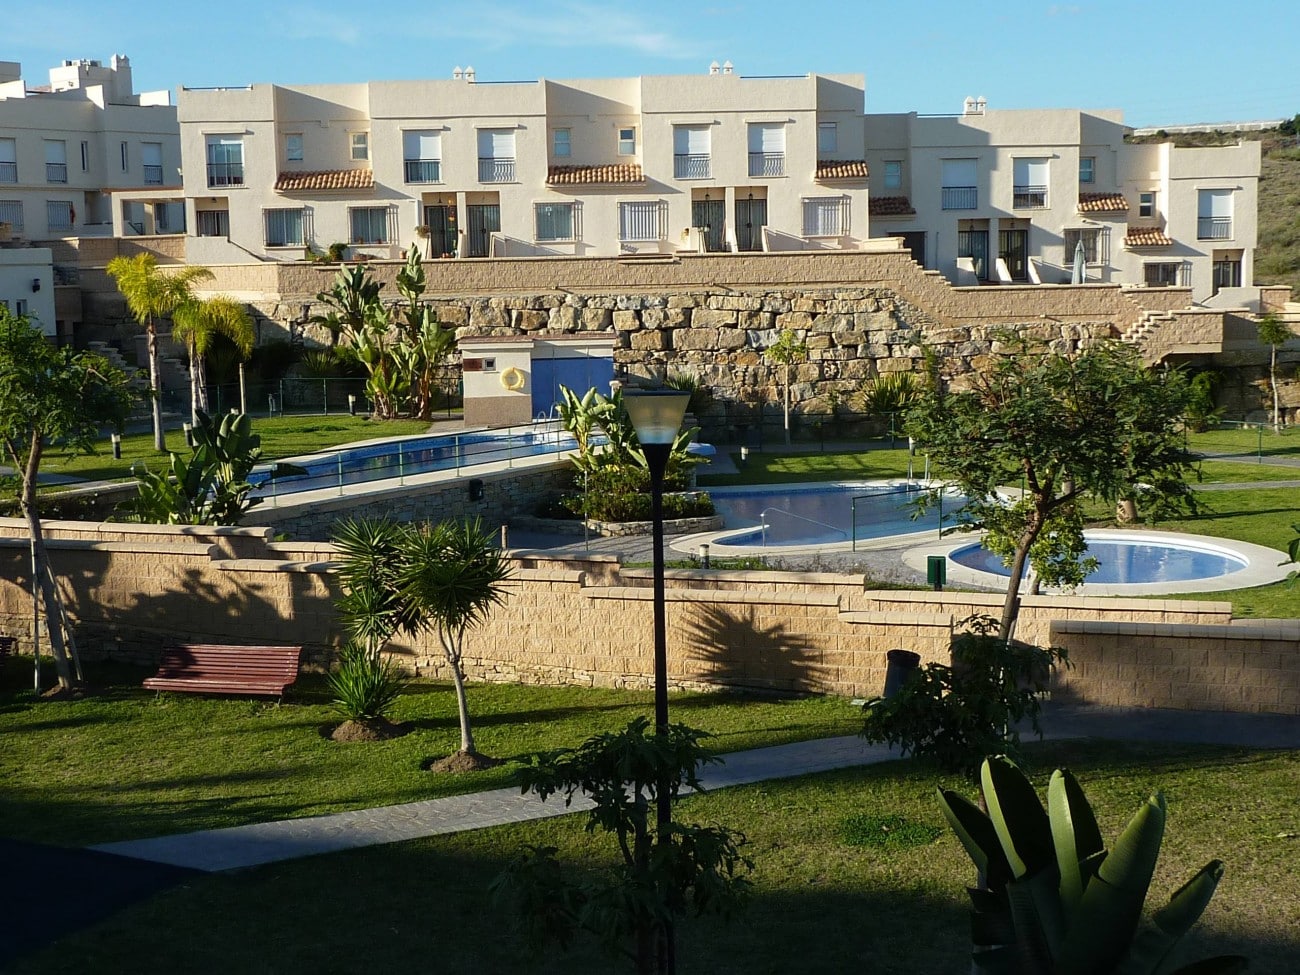 Gemeenschappelijke tuin, gemeenschappelijk zwembad en vooraanzicht van resale huizen in Almayate Bajo in Spanje, gelegen aan de  Costa del Sol-Oost